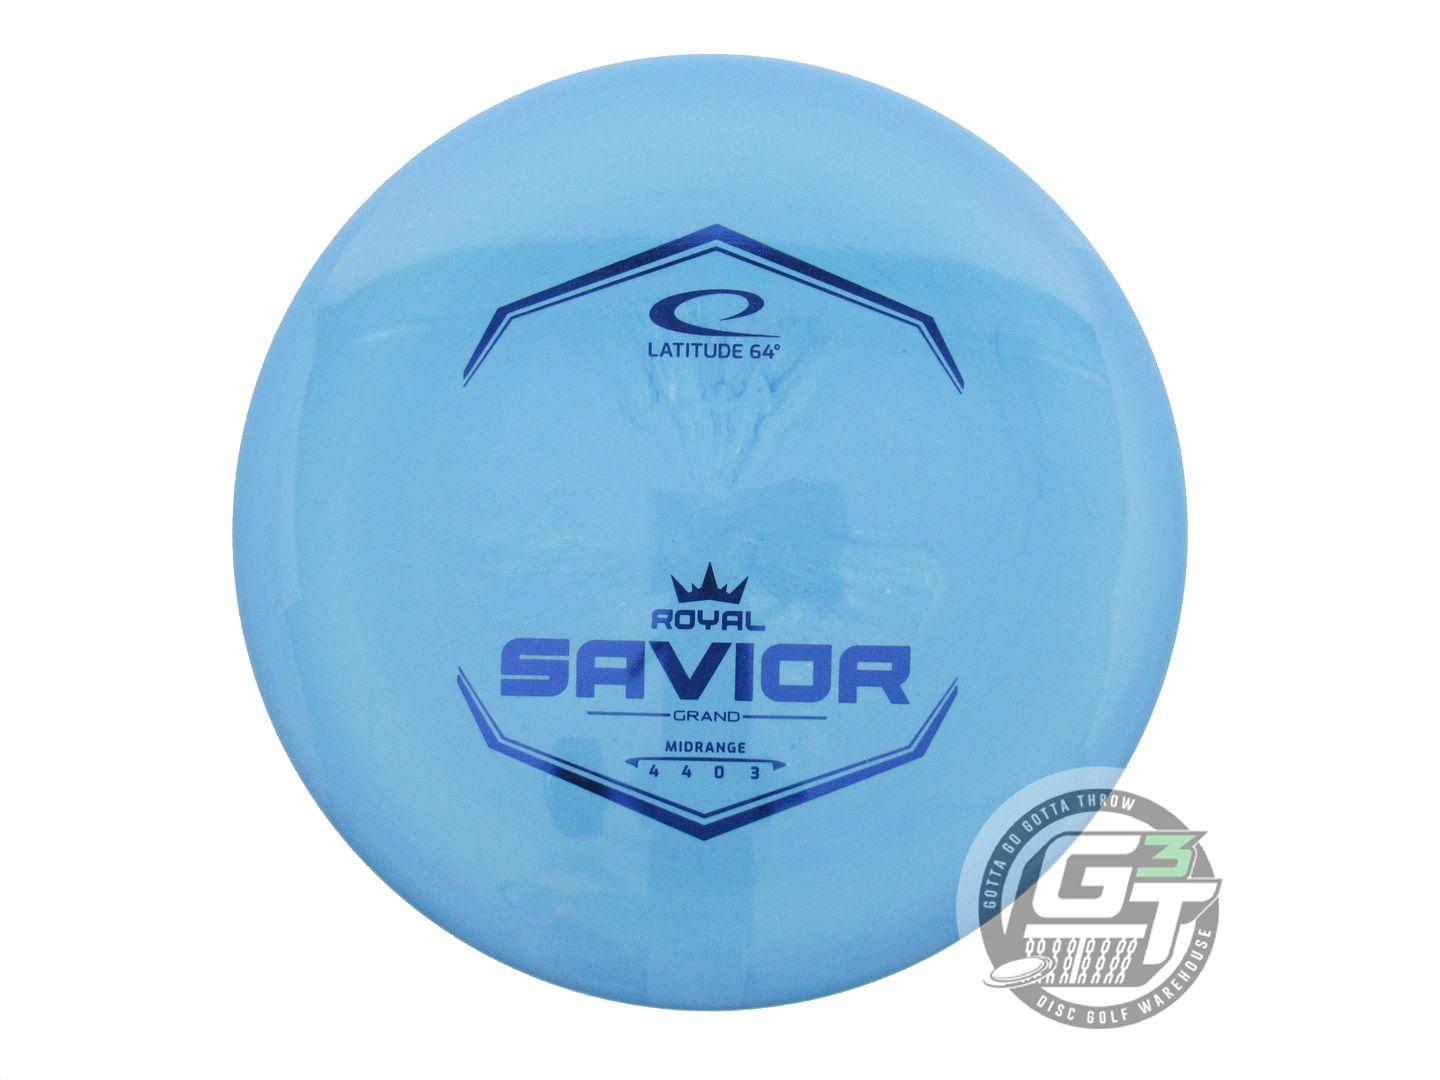 Latitude 64 Royal Grand Savior Midrange Golf Disc (Individually Listed)